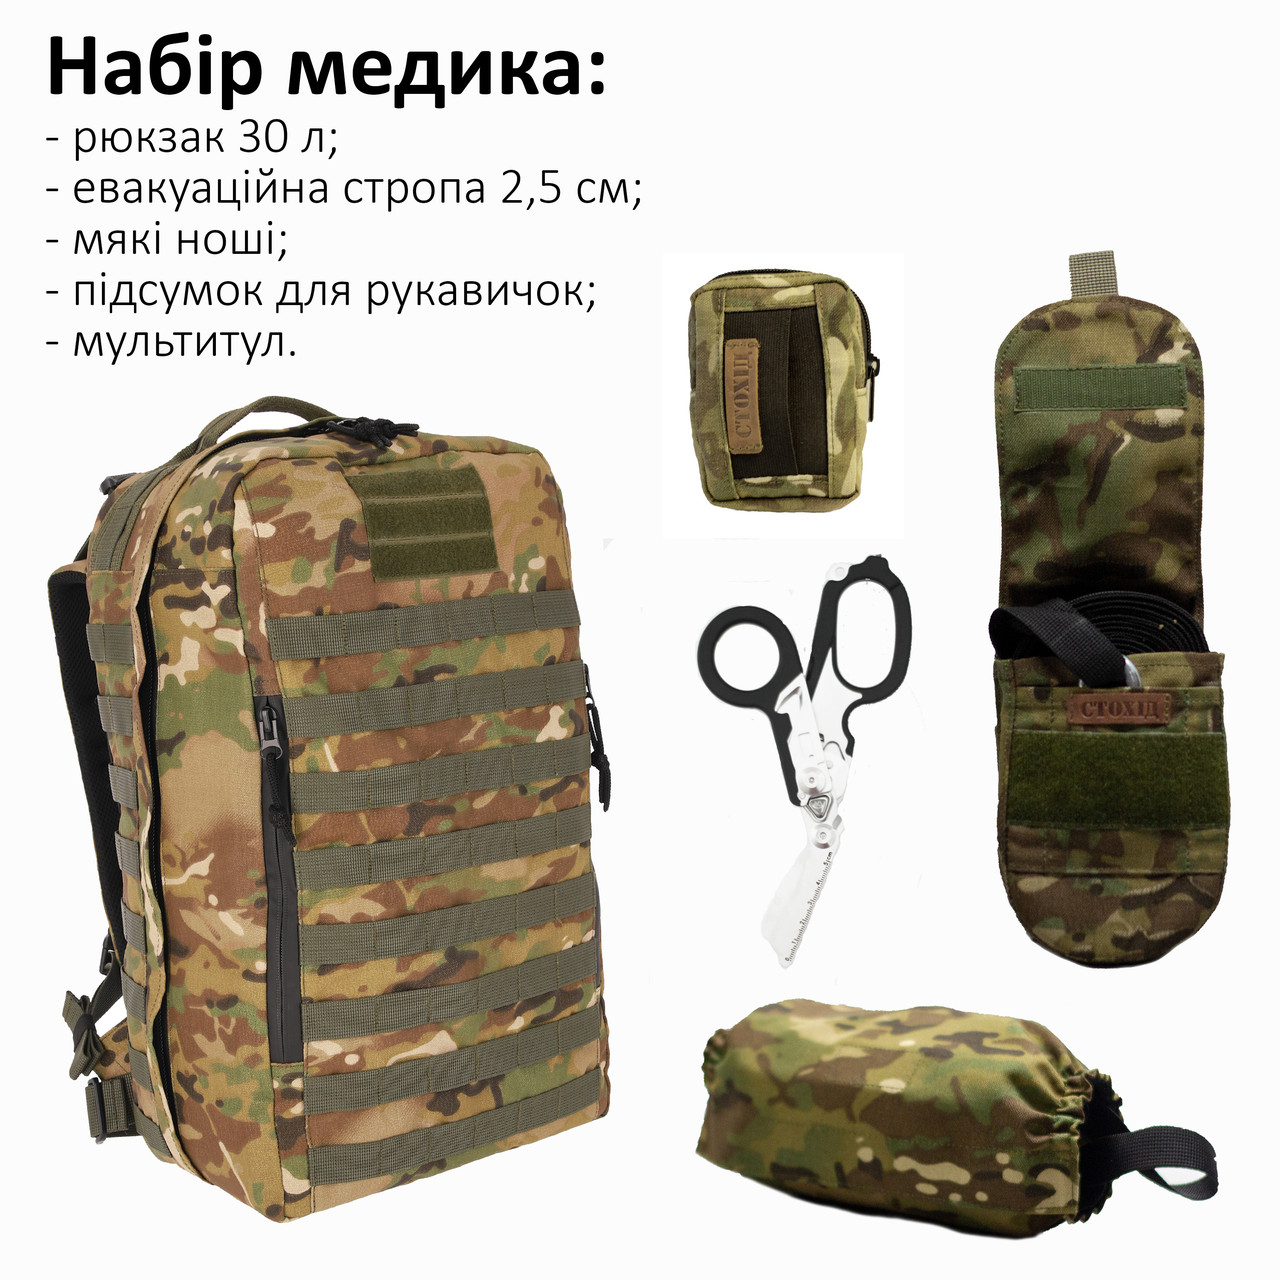 Набір для бойового медика: Рюкзак 30л, стропа 2,5 см, ноші, підсумок для рукавичок, мультитул Стохід Мультикам